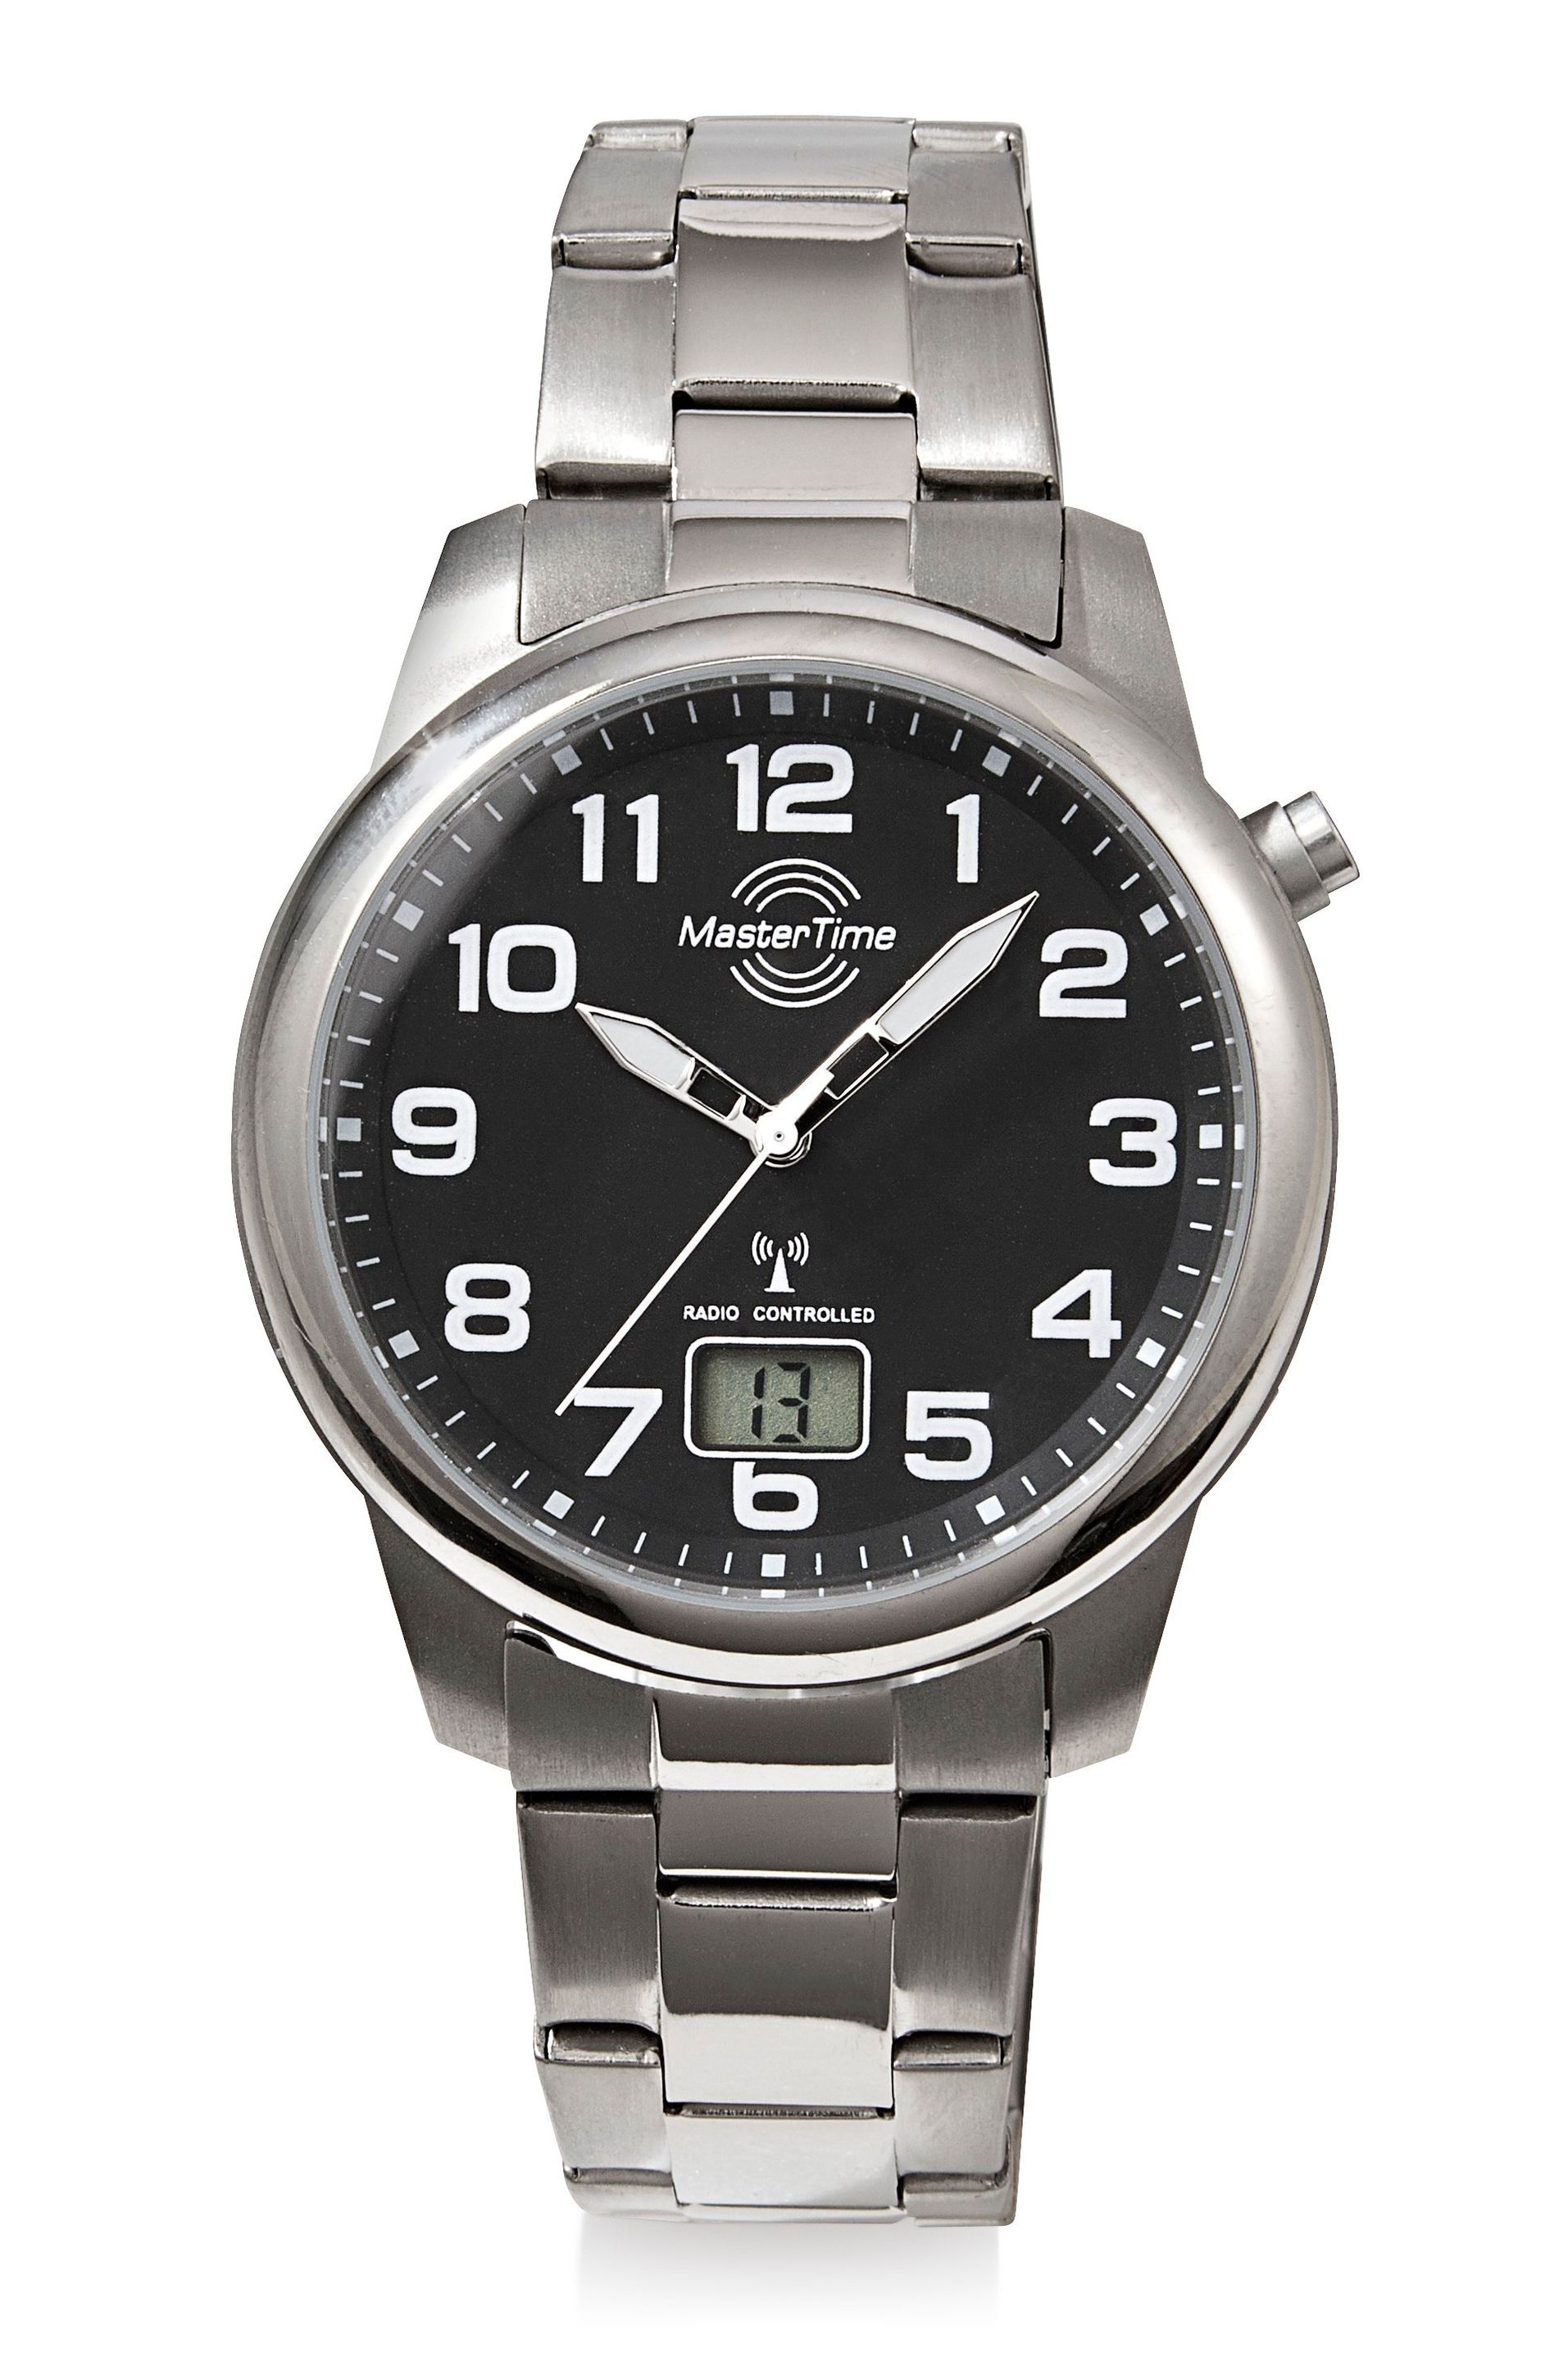 Super beliebter Versandhandel für neue Produkte Mastertime Herren-Funk-Armbanduhr Expert, Titan online kaufen - Orbisana